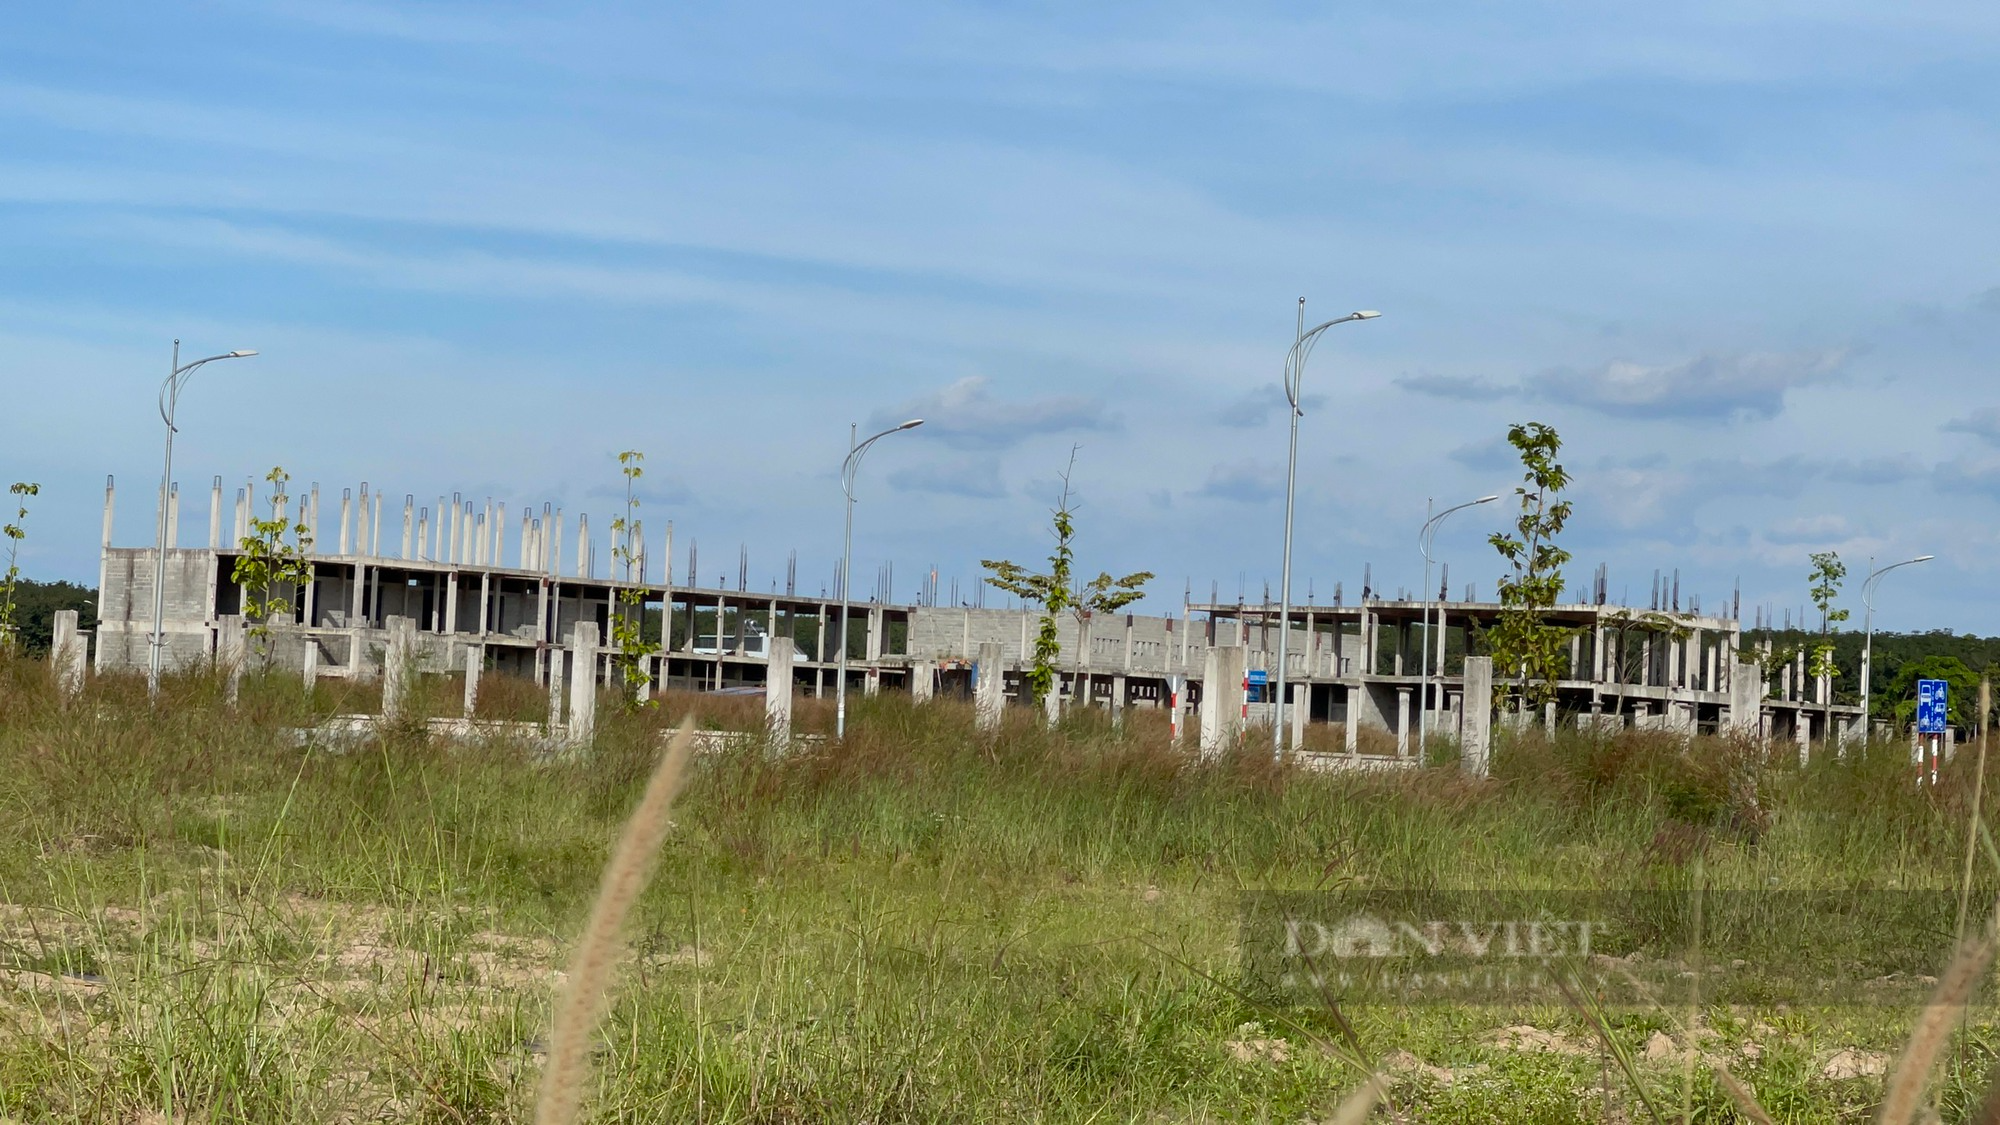 Sân bay Long Thành: Giải quyết nhiều đơn khiếu nại, tố cáo, phản ánh về thu hồi đất, bồi thường, tái định cư - Ảnh 2.